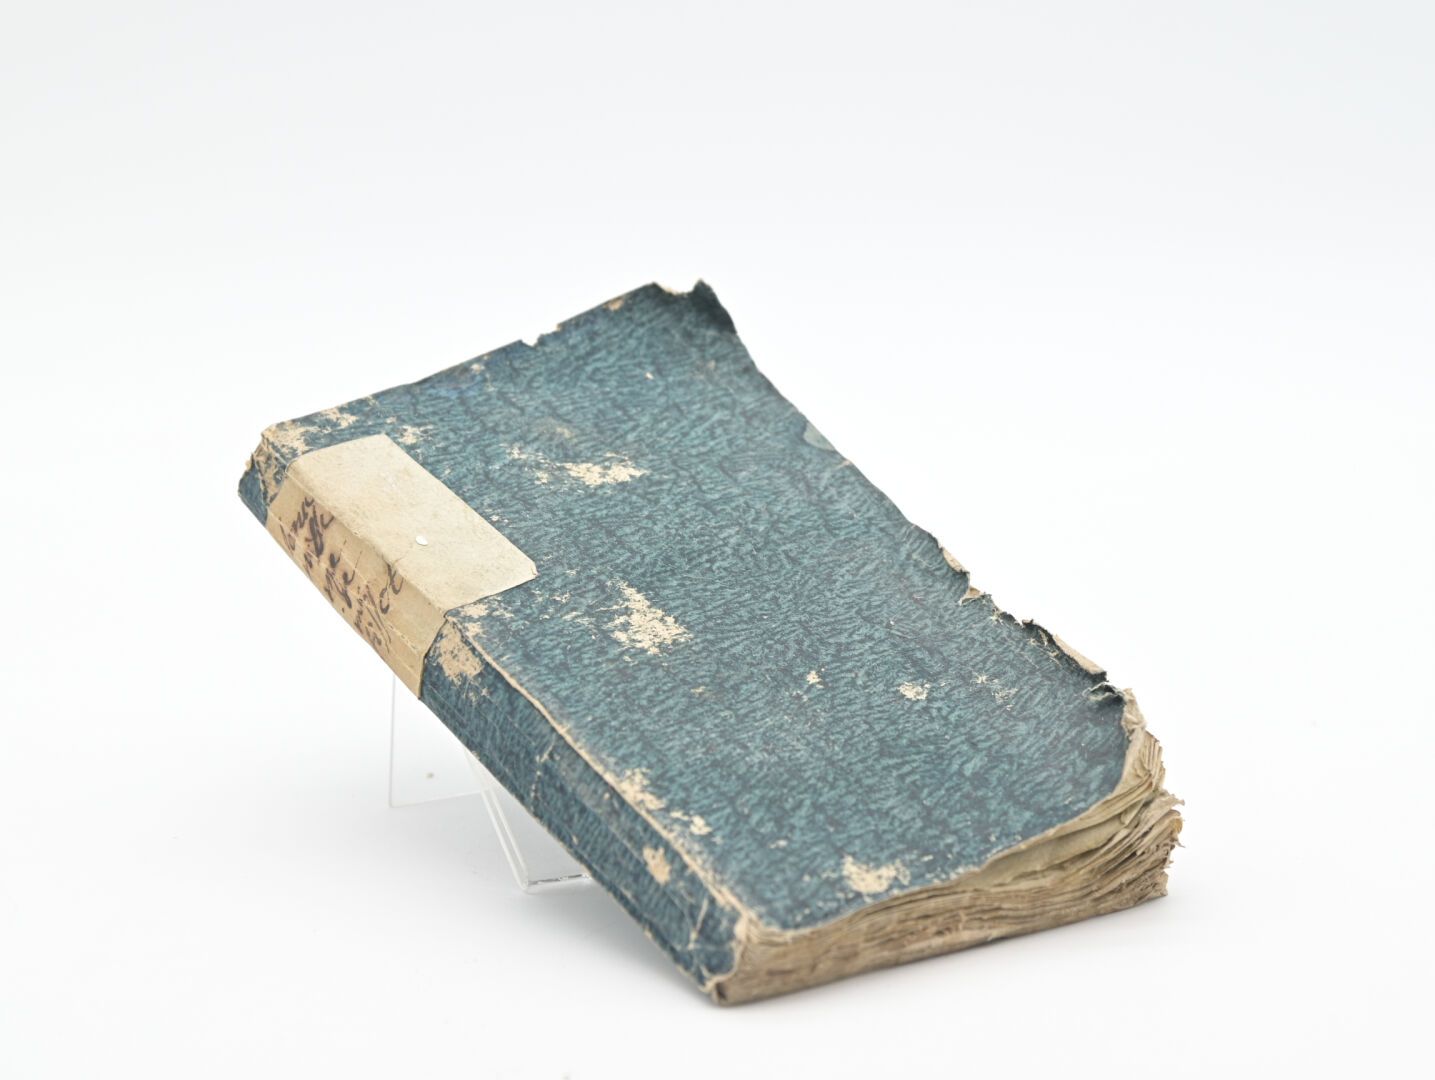 Null 蒂索特。
L'Onanisme, 关于手淫产生的疾病的论文。新版，大幅增加。
洛桑，1791年，12开本时期的平装书，背面有手写的标题。